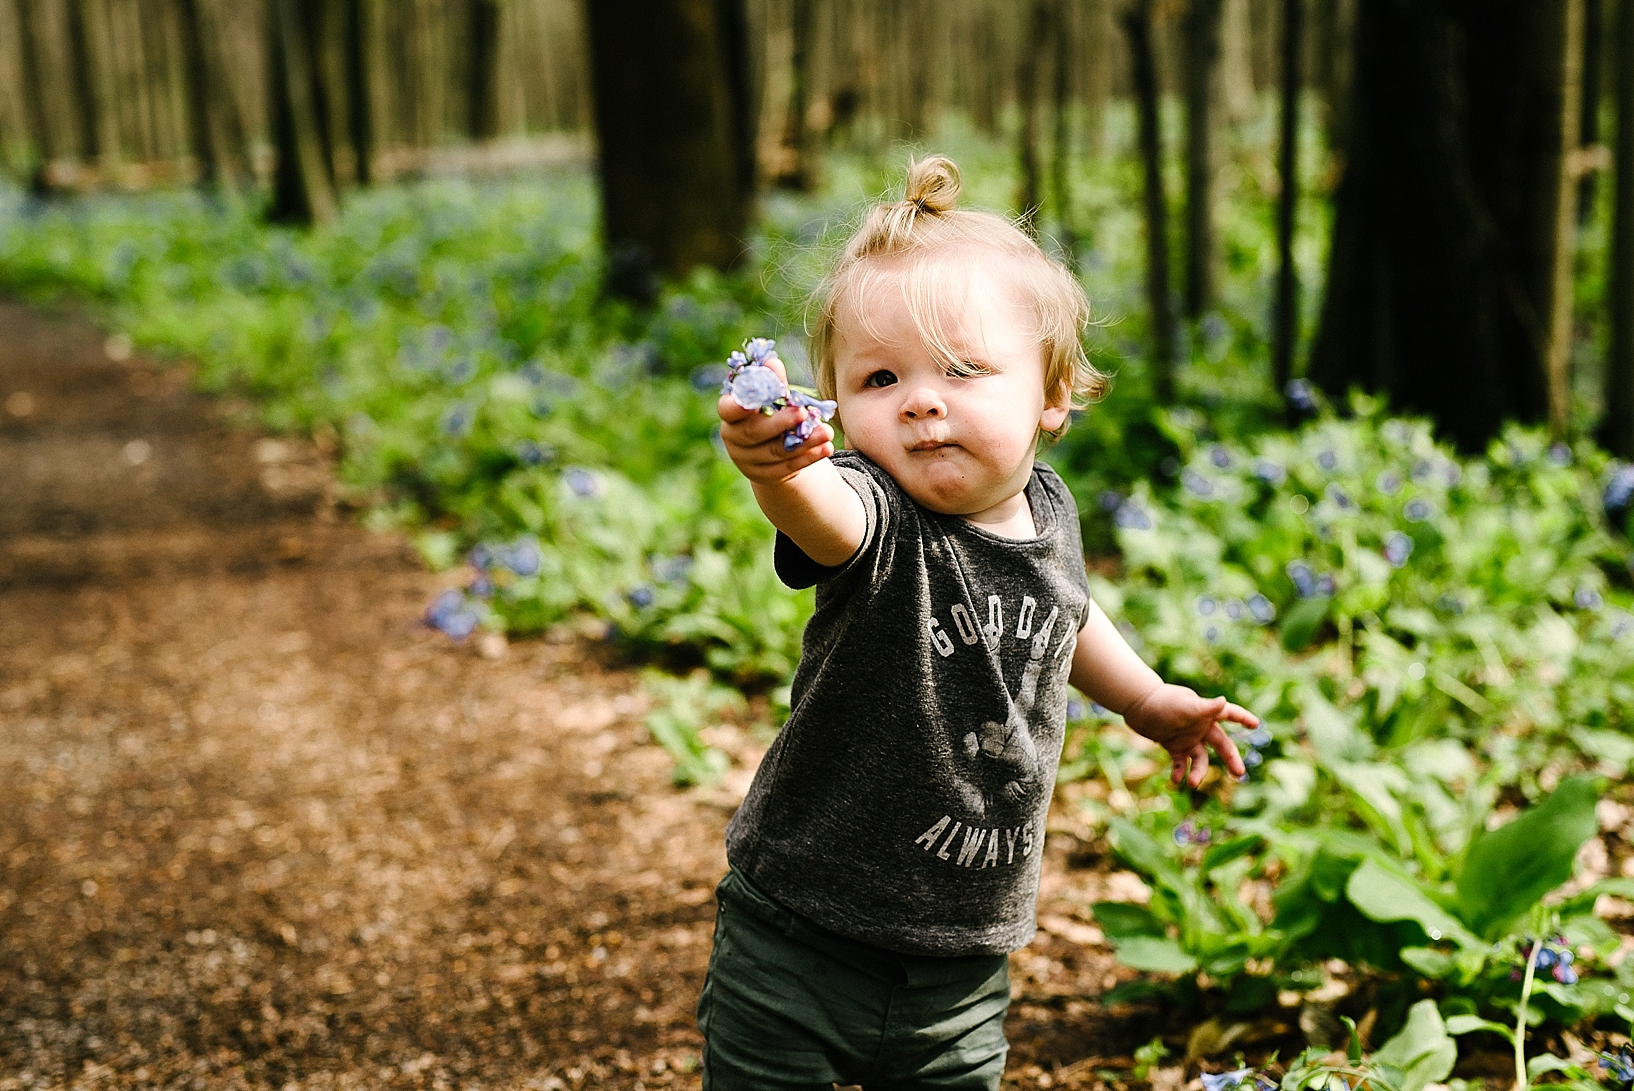 hipster toddler boy with man bun picking bluebells